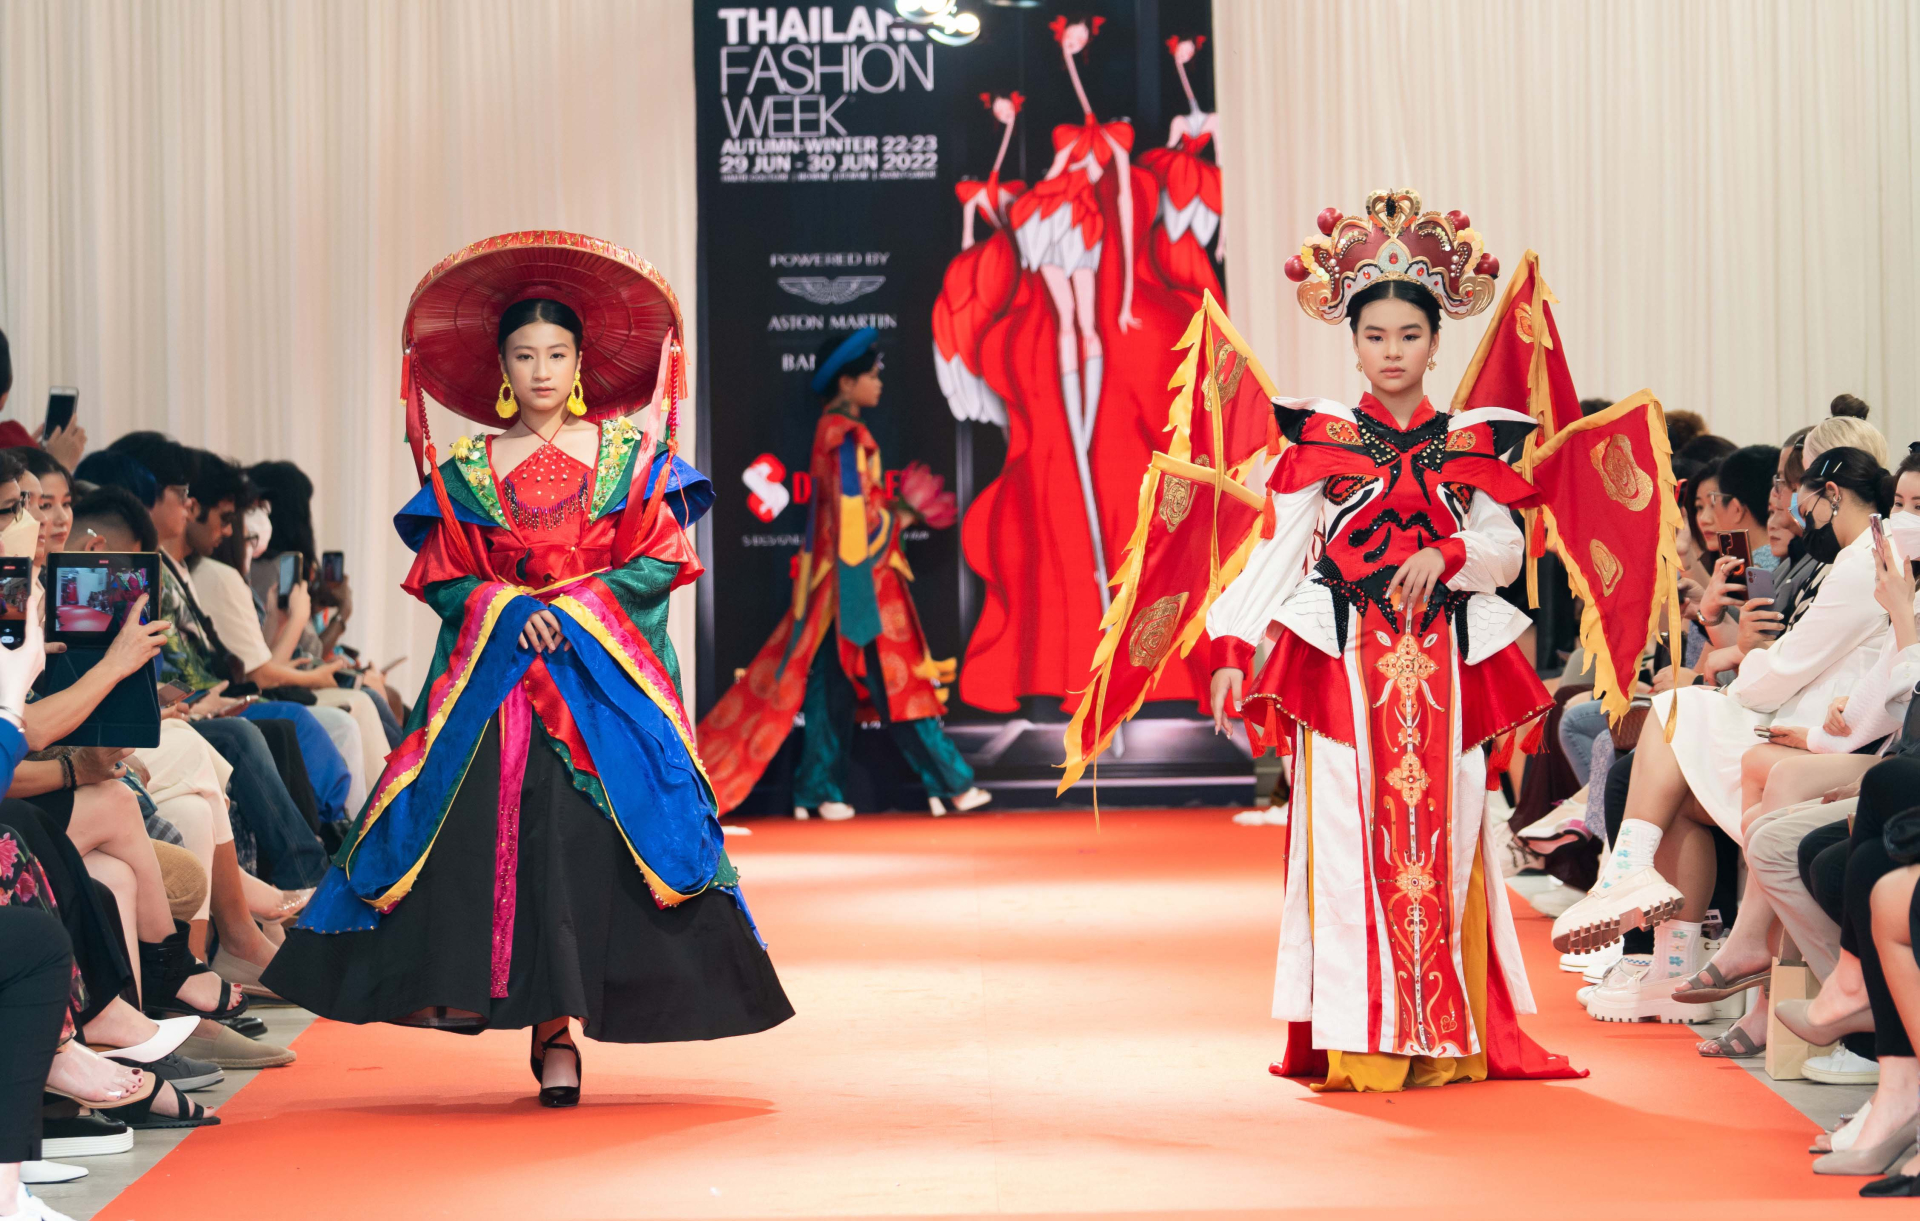 BST mang đậm bản sắc Việt và văn hóa 5 châu được loạt mẫu nhí trình diễn tại Thailand Fashion Week 2022 - ảnh 1